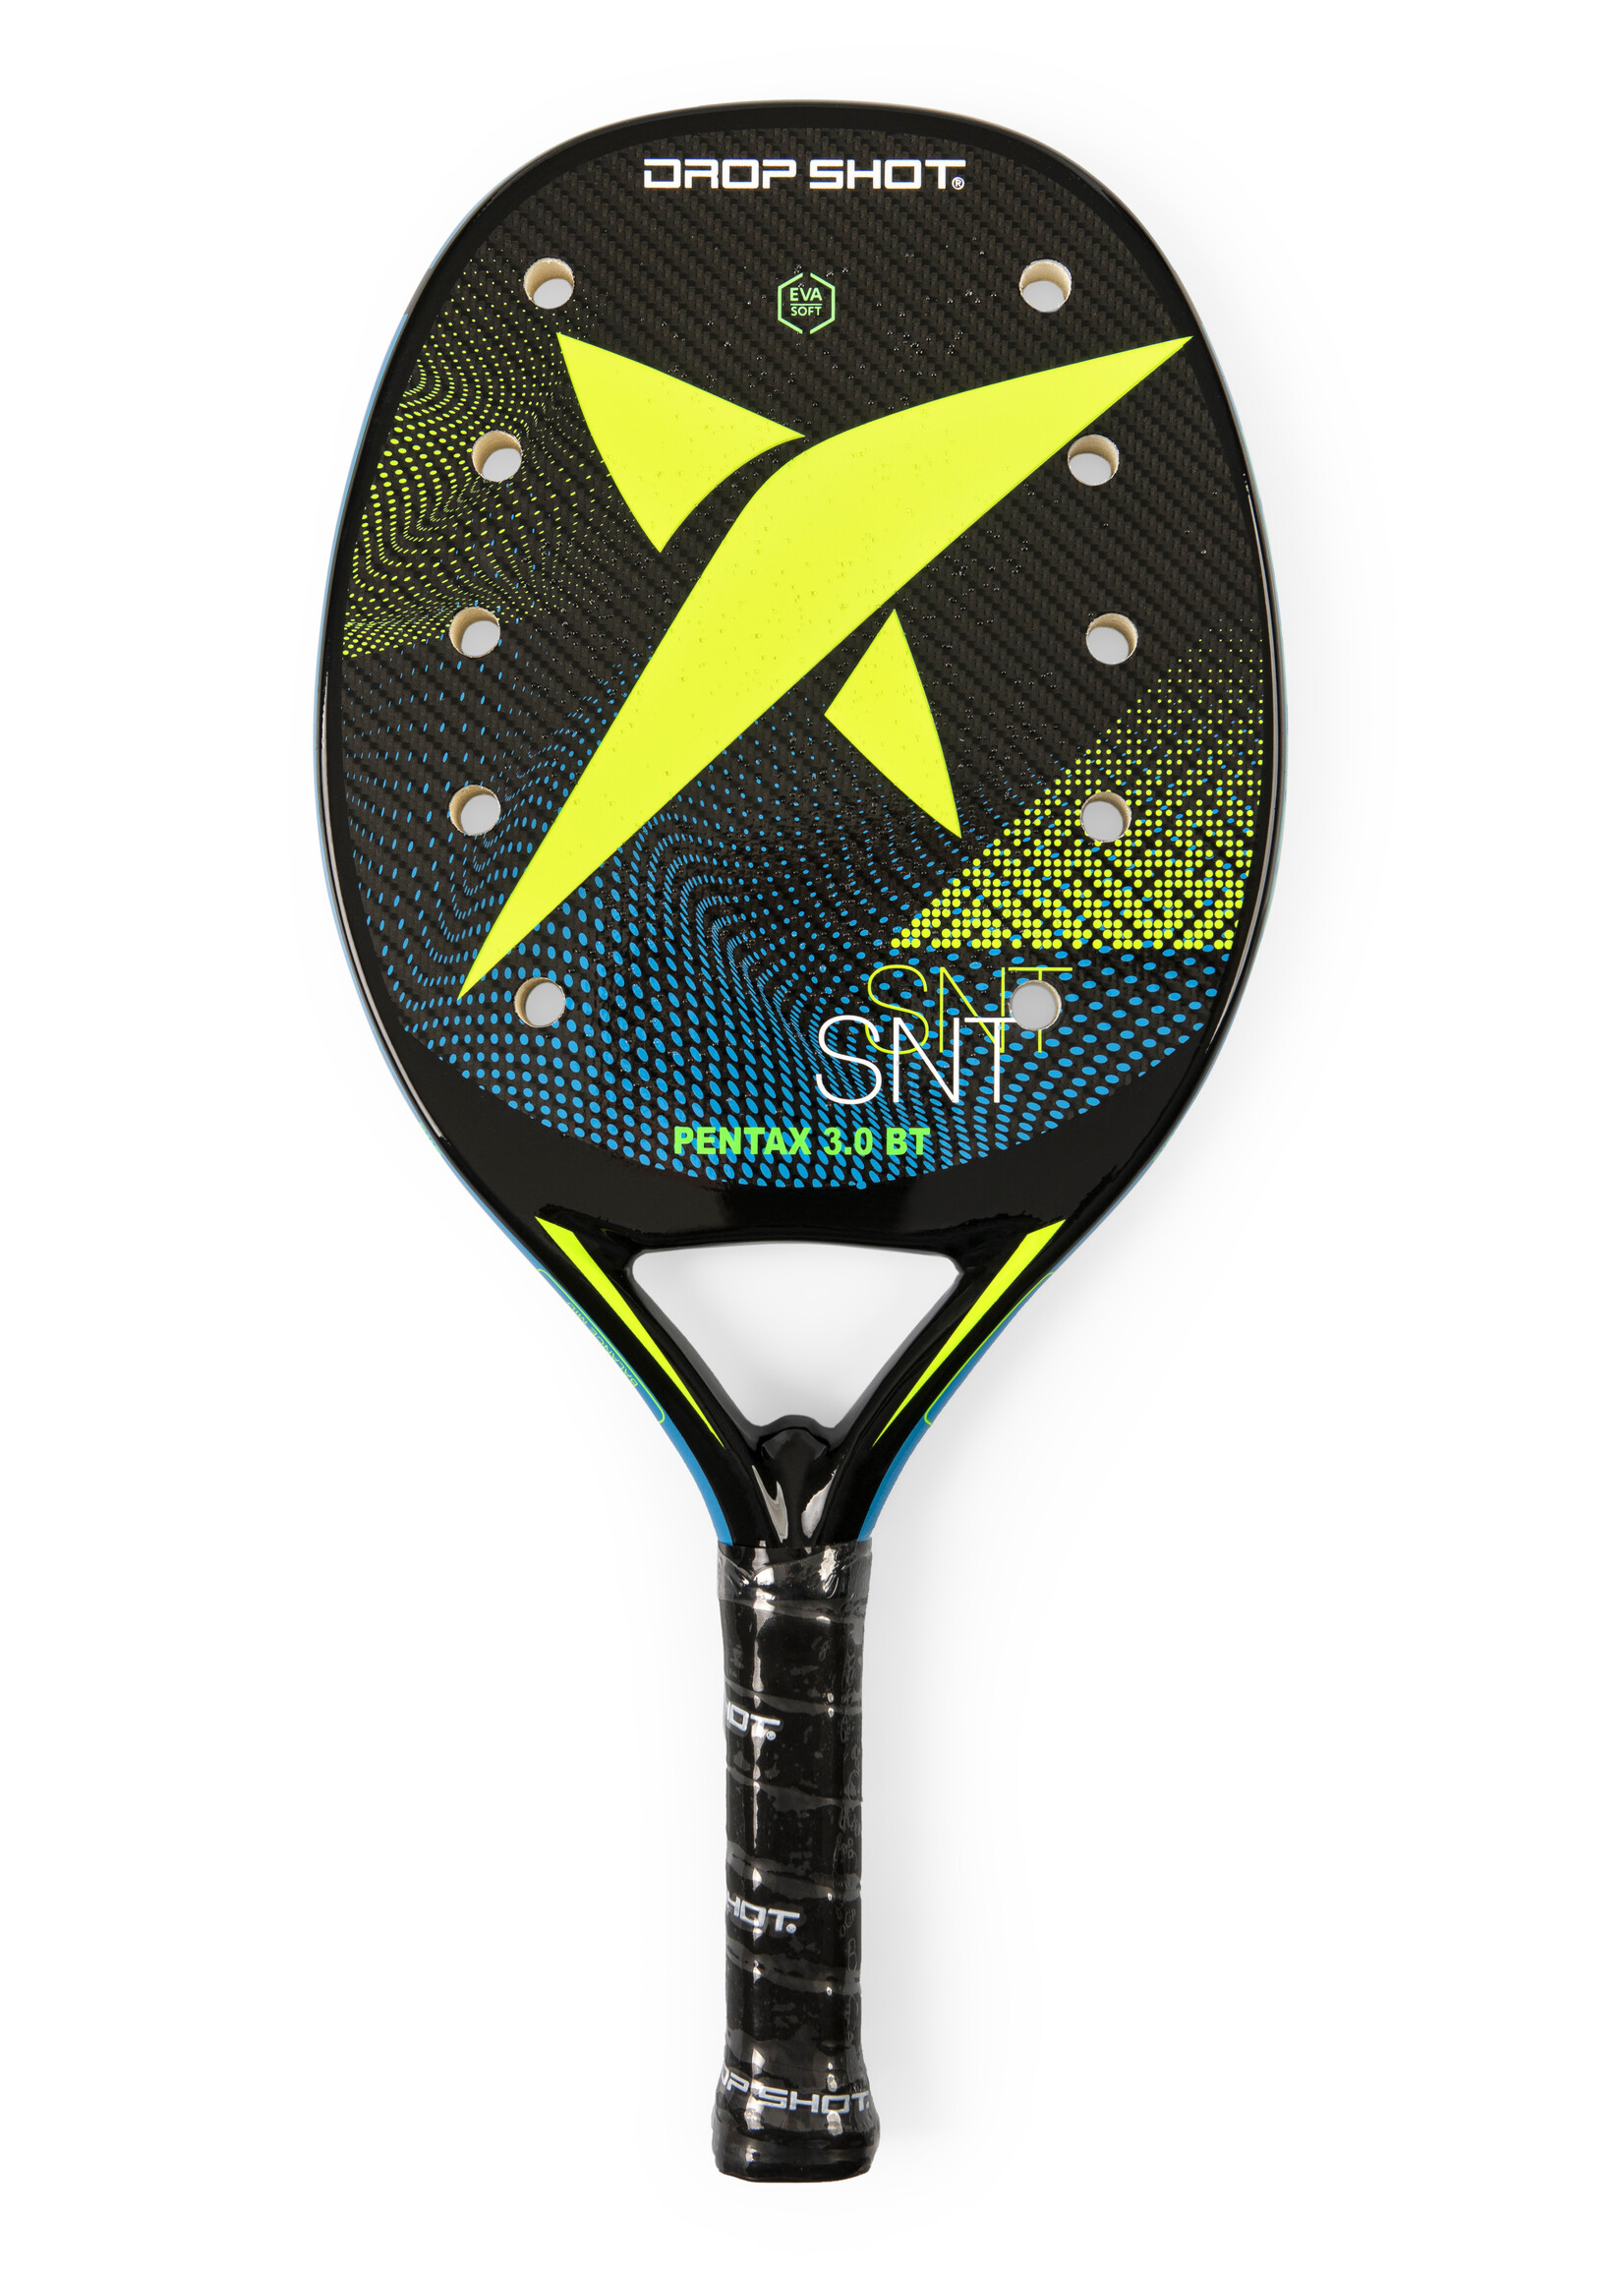 Drop Shot Pala Pentax 3.0 Beach Tennis Racquet